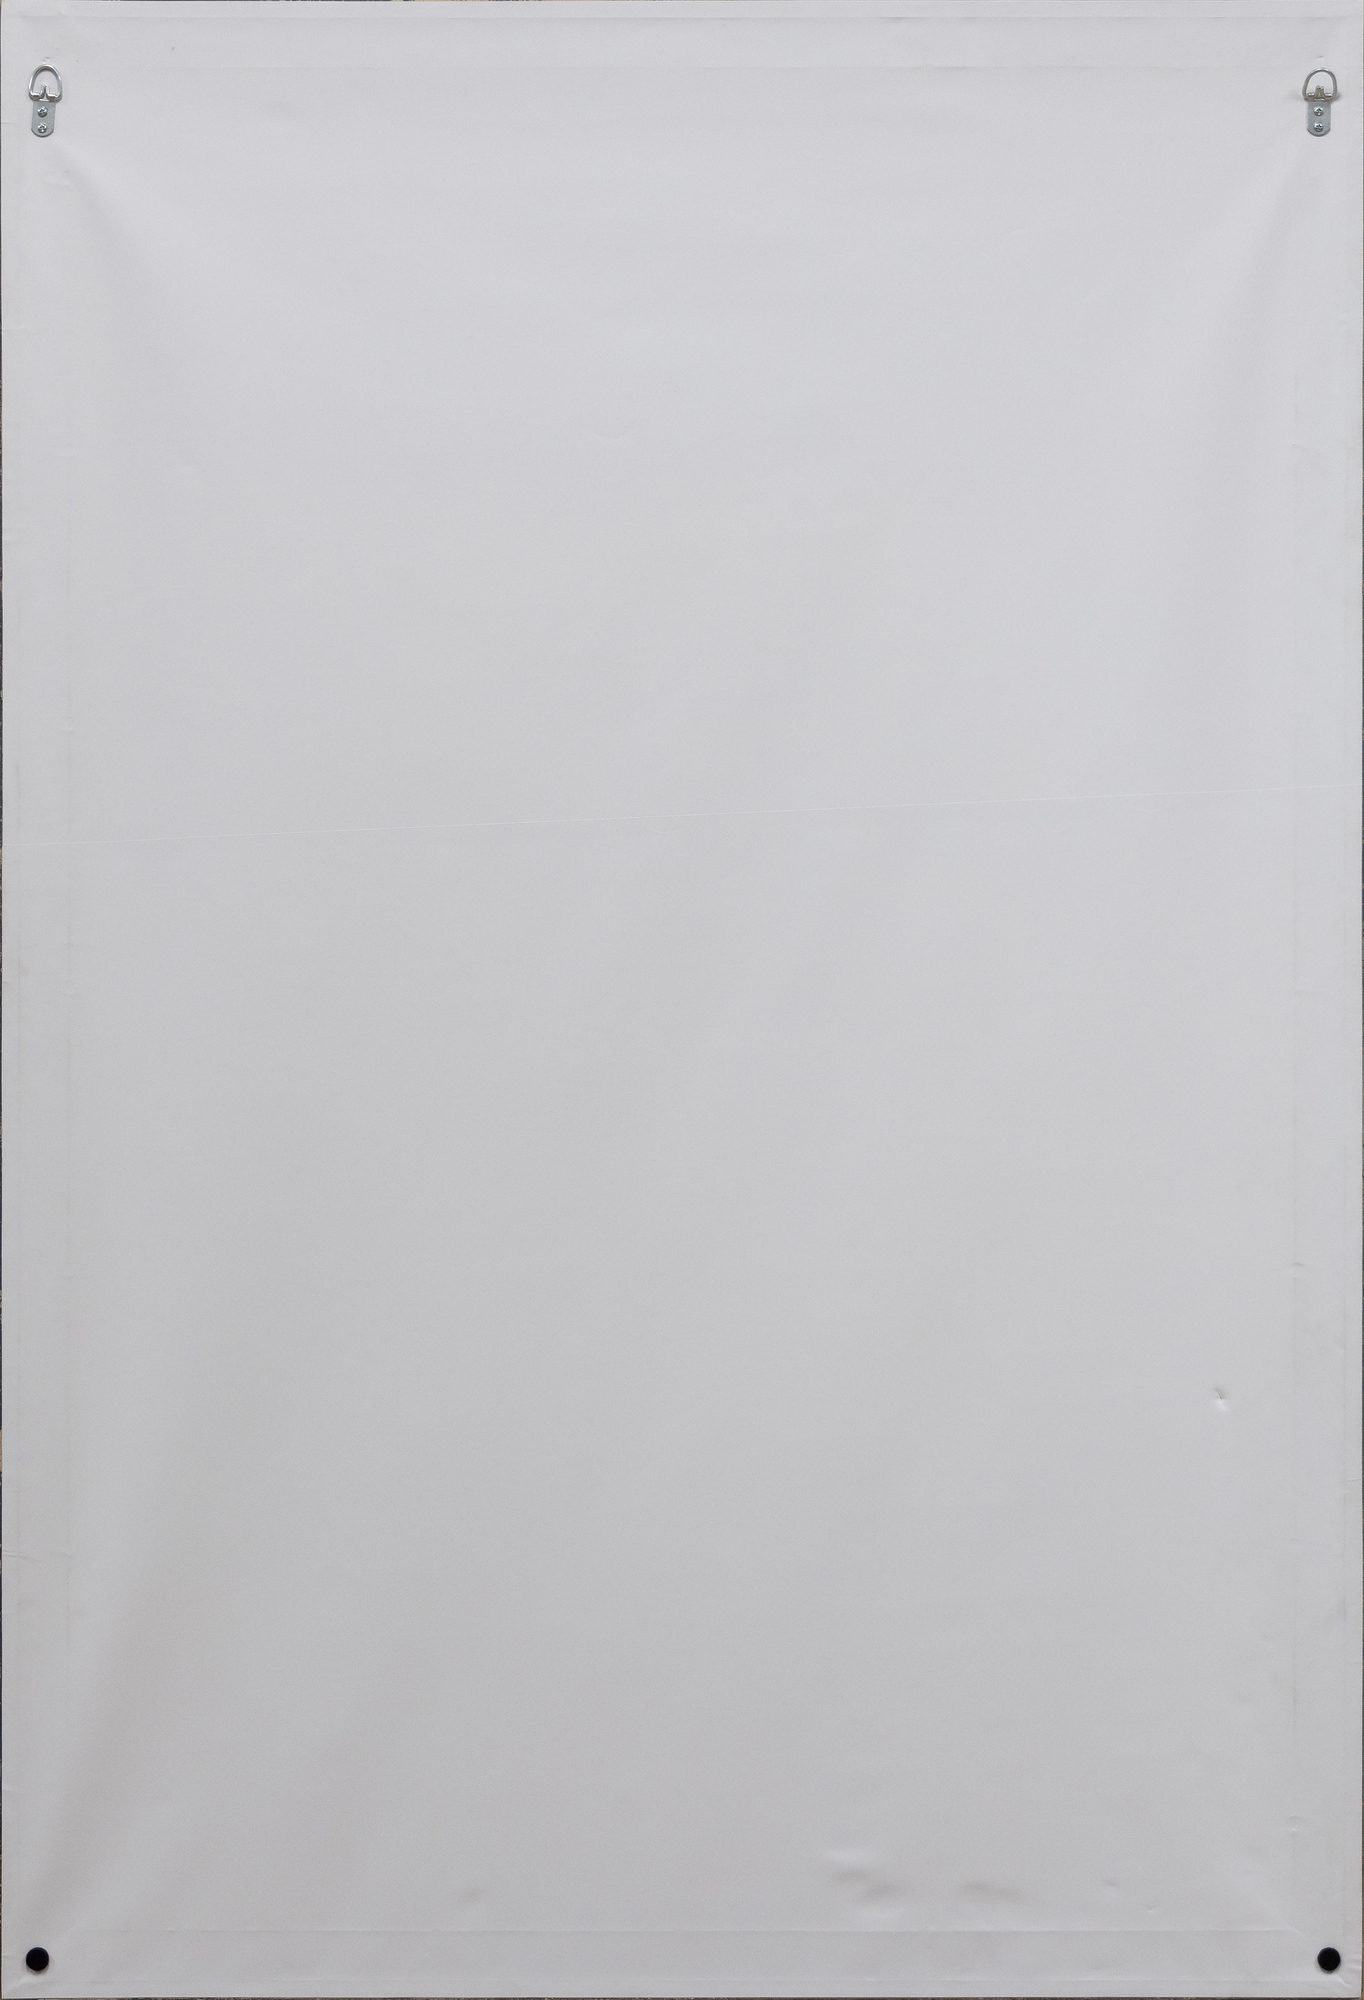 סדרת אושן פארק של דיבנקורן מעוררת את האיזון העדין של האמן בין אור וצבע, את הקומפוזיציה המהורהרת שלו ואת השילוב העדין של אלמנטים נופיים, שכולם מדמים את אווירת החוף של הסטודיו שלו בסנטה מוניקה. בתחילת שנות התשעים חזר דיבנקורן לנושאים ולרגישויות האסתטיות של סדרת אושן פארק על ידי מינוף טכניקות הדפס שונות כדי להרחיב את חקירתו את השפה המופשטת שפיתח בציוריו. &quot;High Green, Version I&quot; מדגים את המרדף הזה, ומציע את אסטרטגיות הקומפוזיציה, פלטת הצבעים והדאגות המרחביות המגדירות את סדרת אושן פארק, תוך הצגת האפשרויות הייחודיות של הדפס לפרשנות מחדש של אלמנטים אלה.